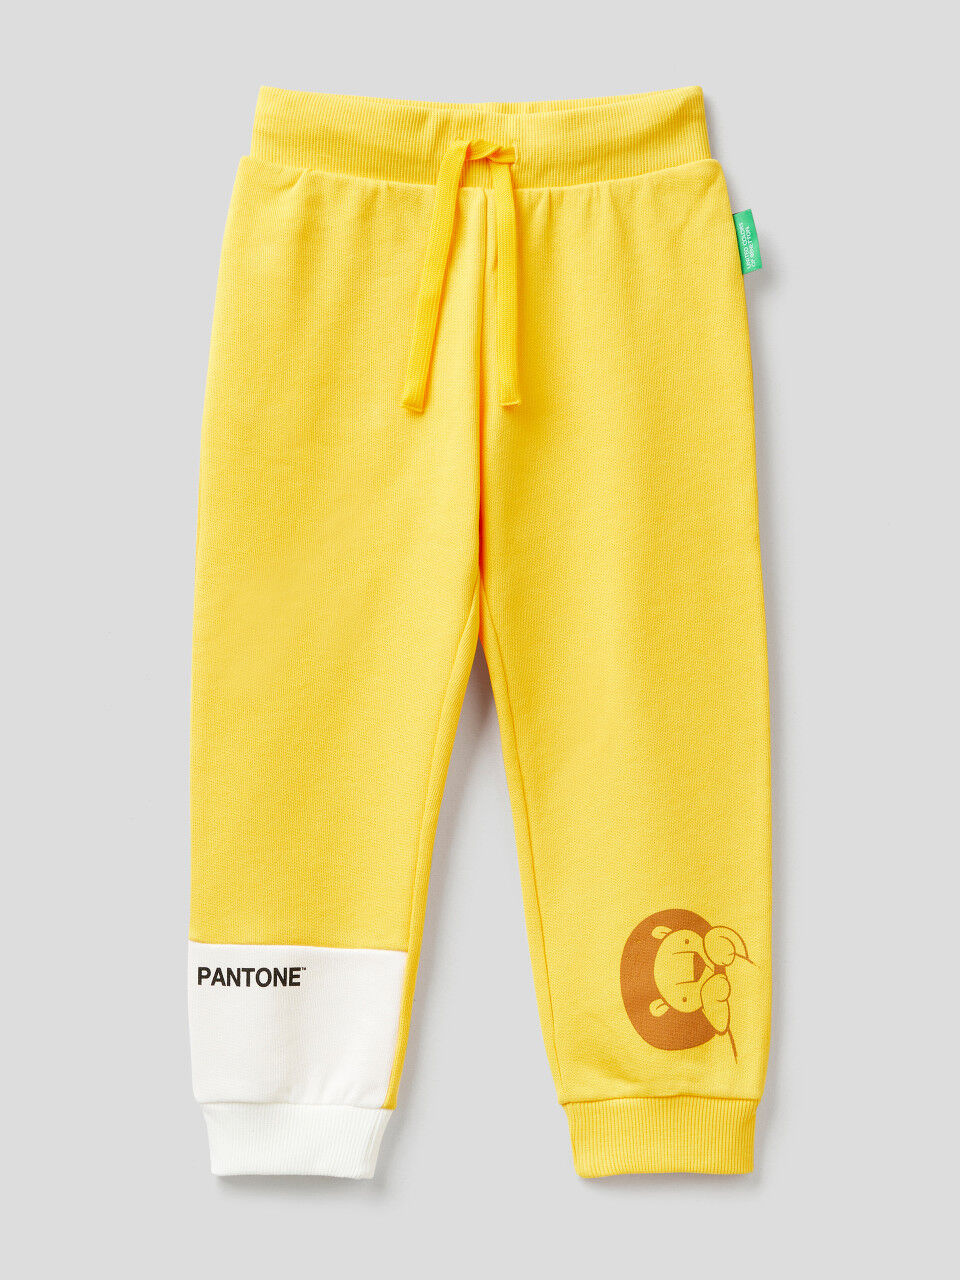 Pantalón amarillo de felpa BenettonxPantone™